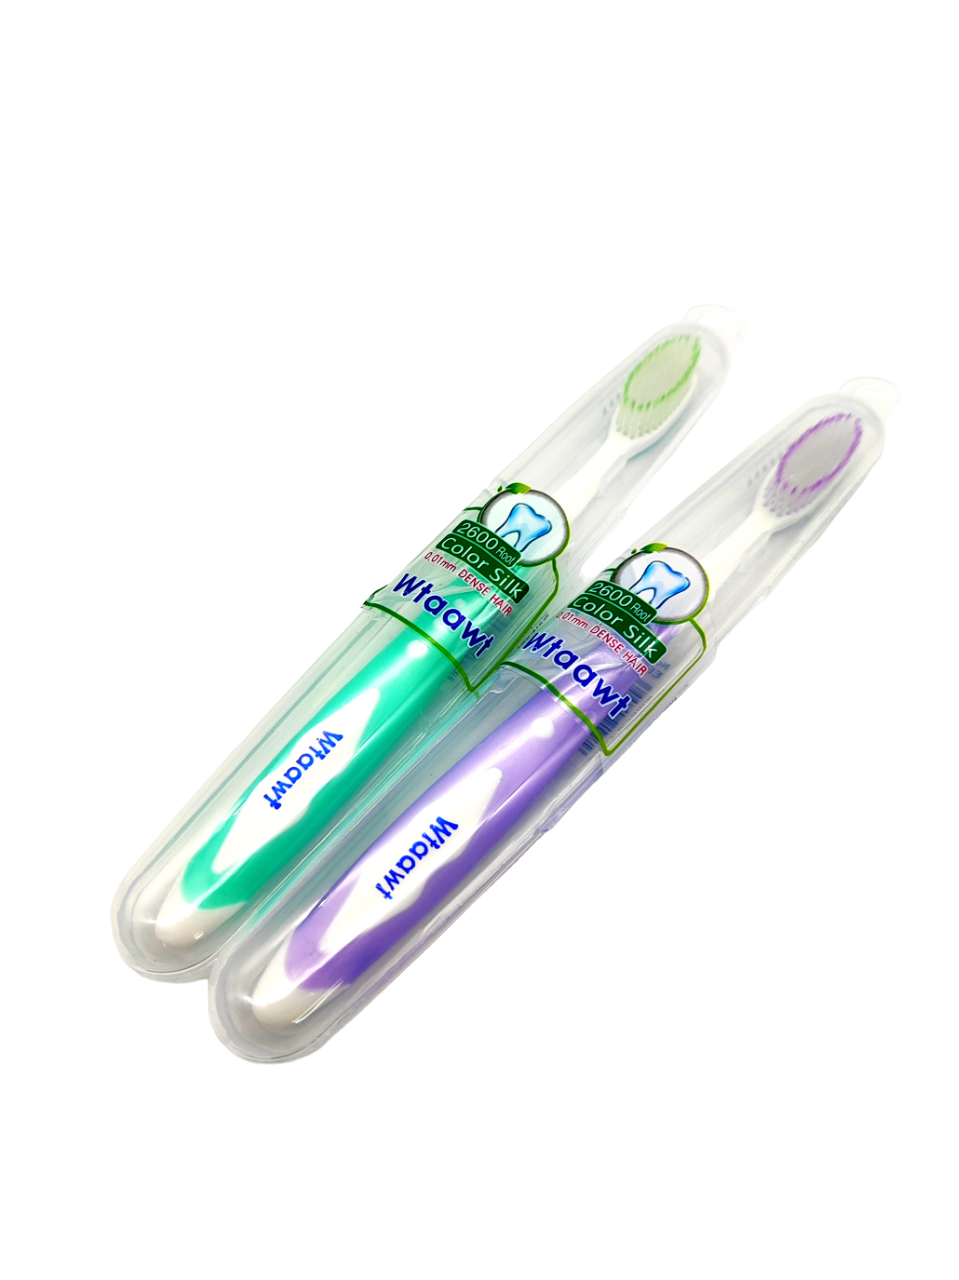 Комплект зубных щеток Wtaawt в футляре Цвет зеленый-фиолетовый 2 шт. набор зубных паст rochjana с экстрактом нони 30 г с экстрактами растений 30 г